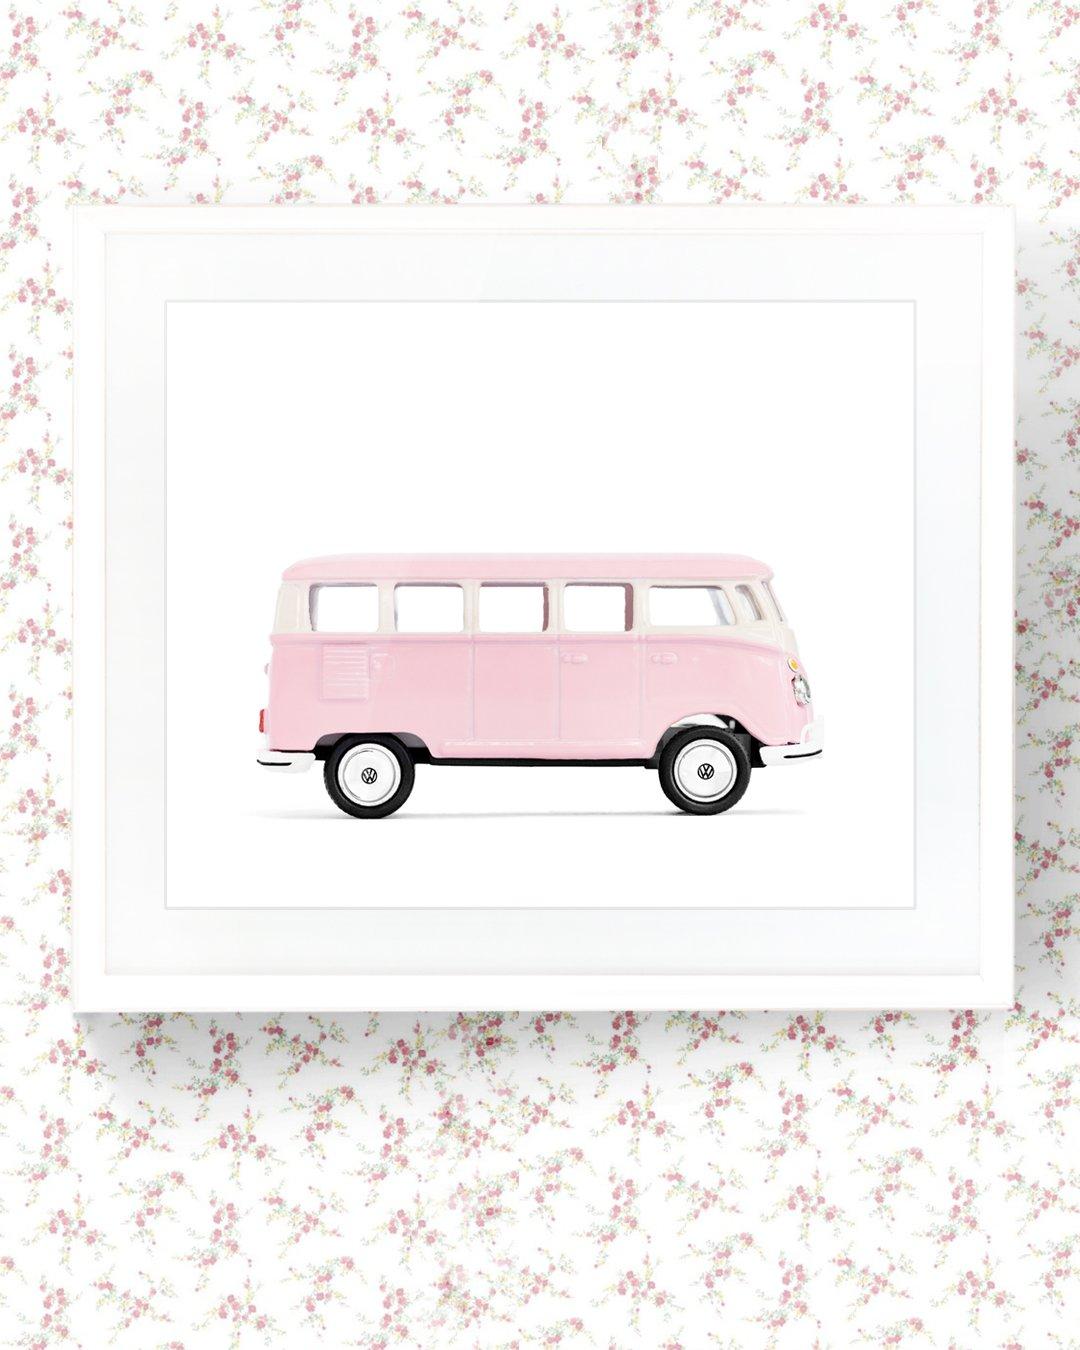 Car Series - Pink Van